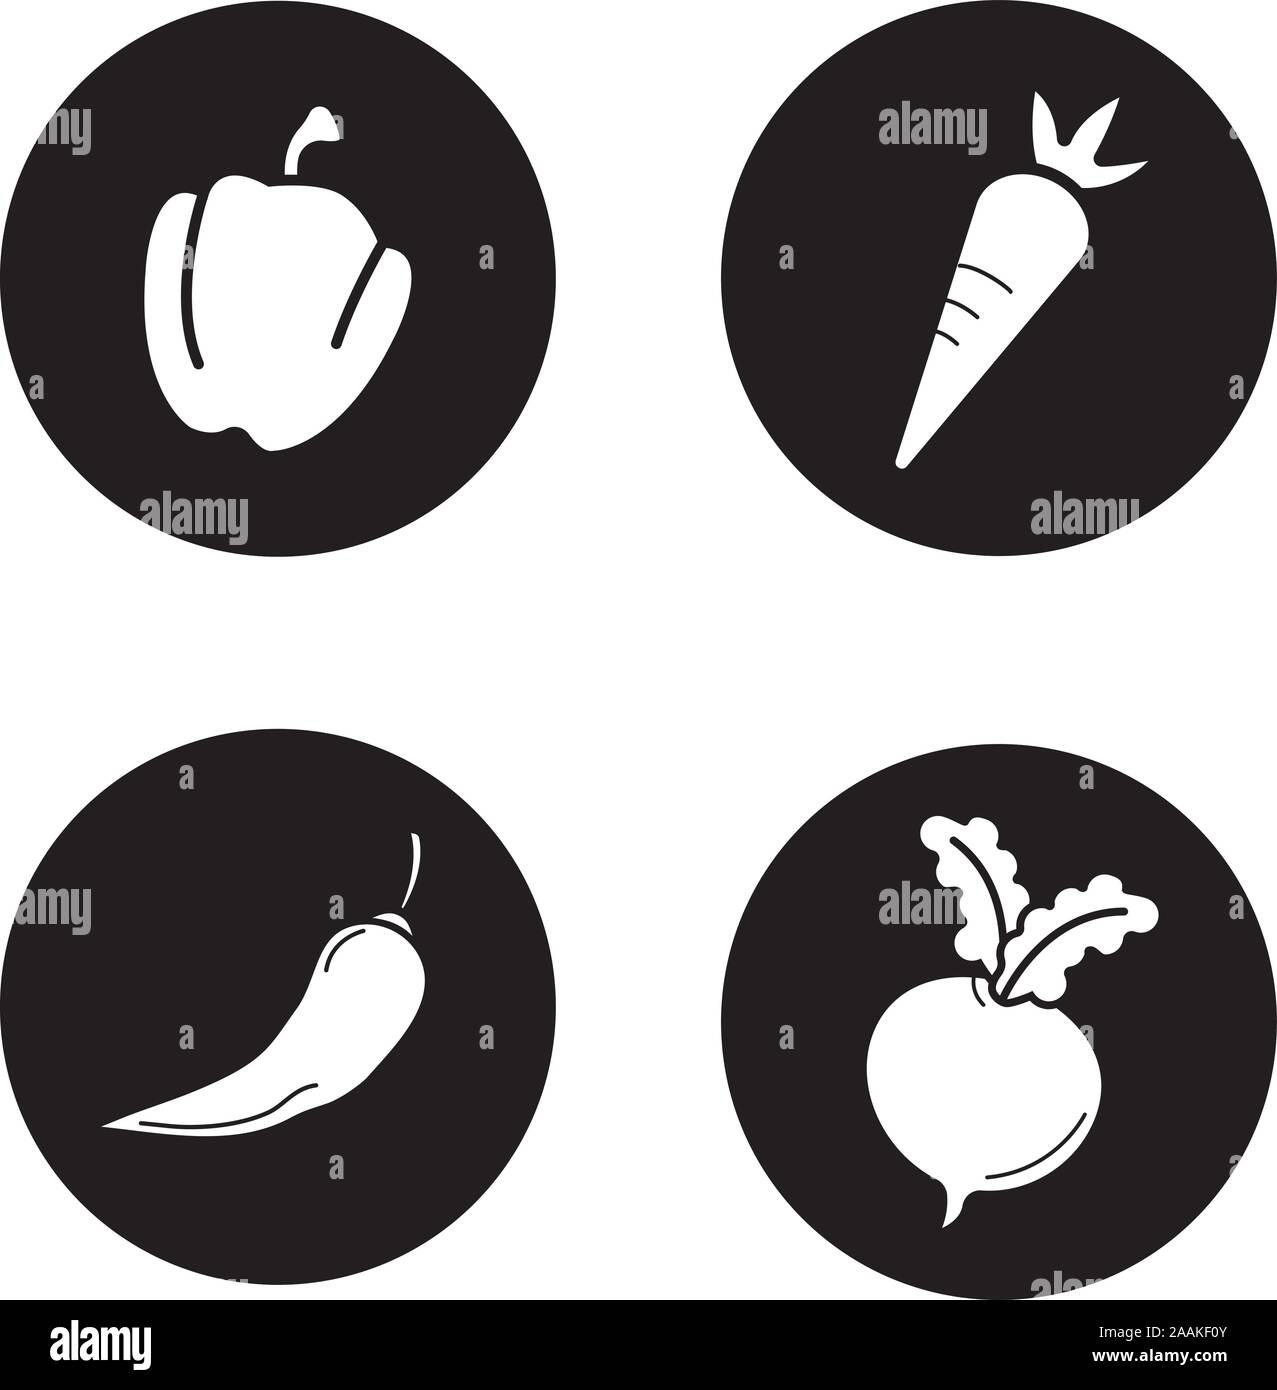 Gemüse schwarze Symbole gesetzt. Paprika, Möhren, Chili und Zuckerrüben. Vektor weiss Abbildungen in Kreise Stock Vektor